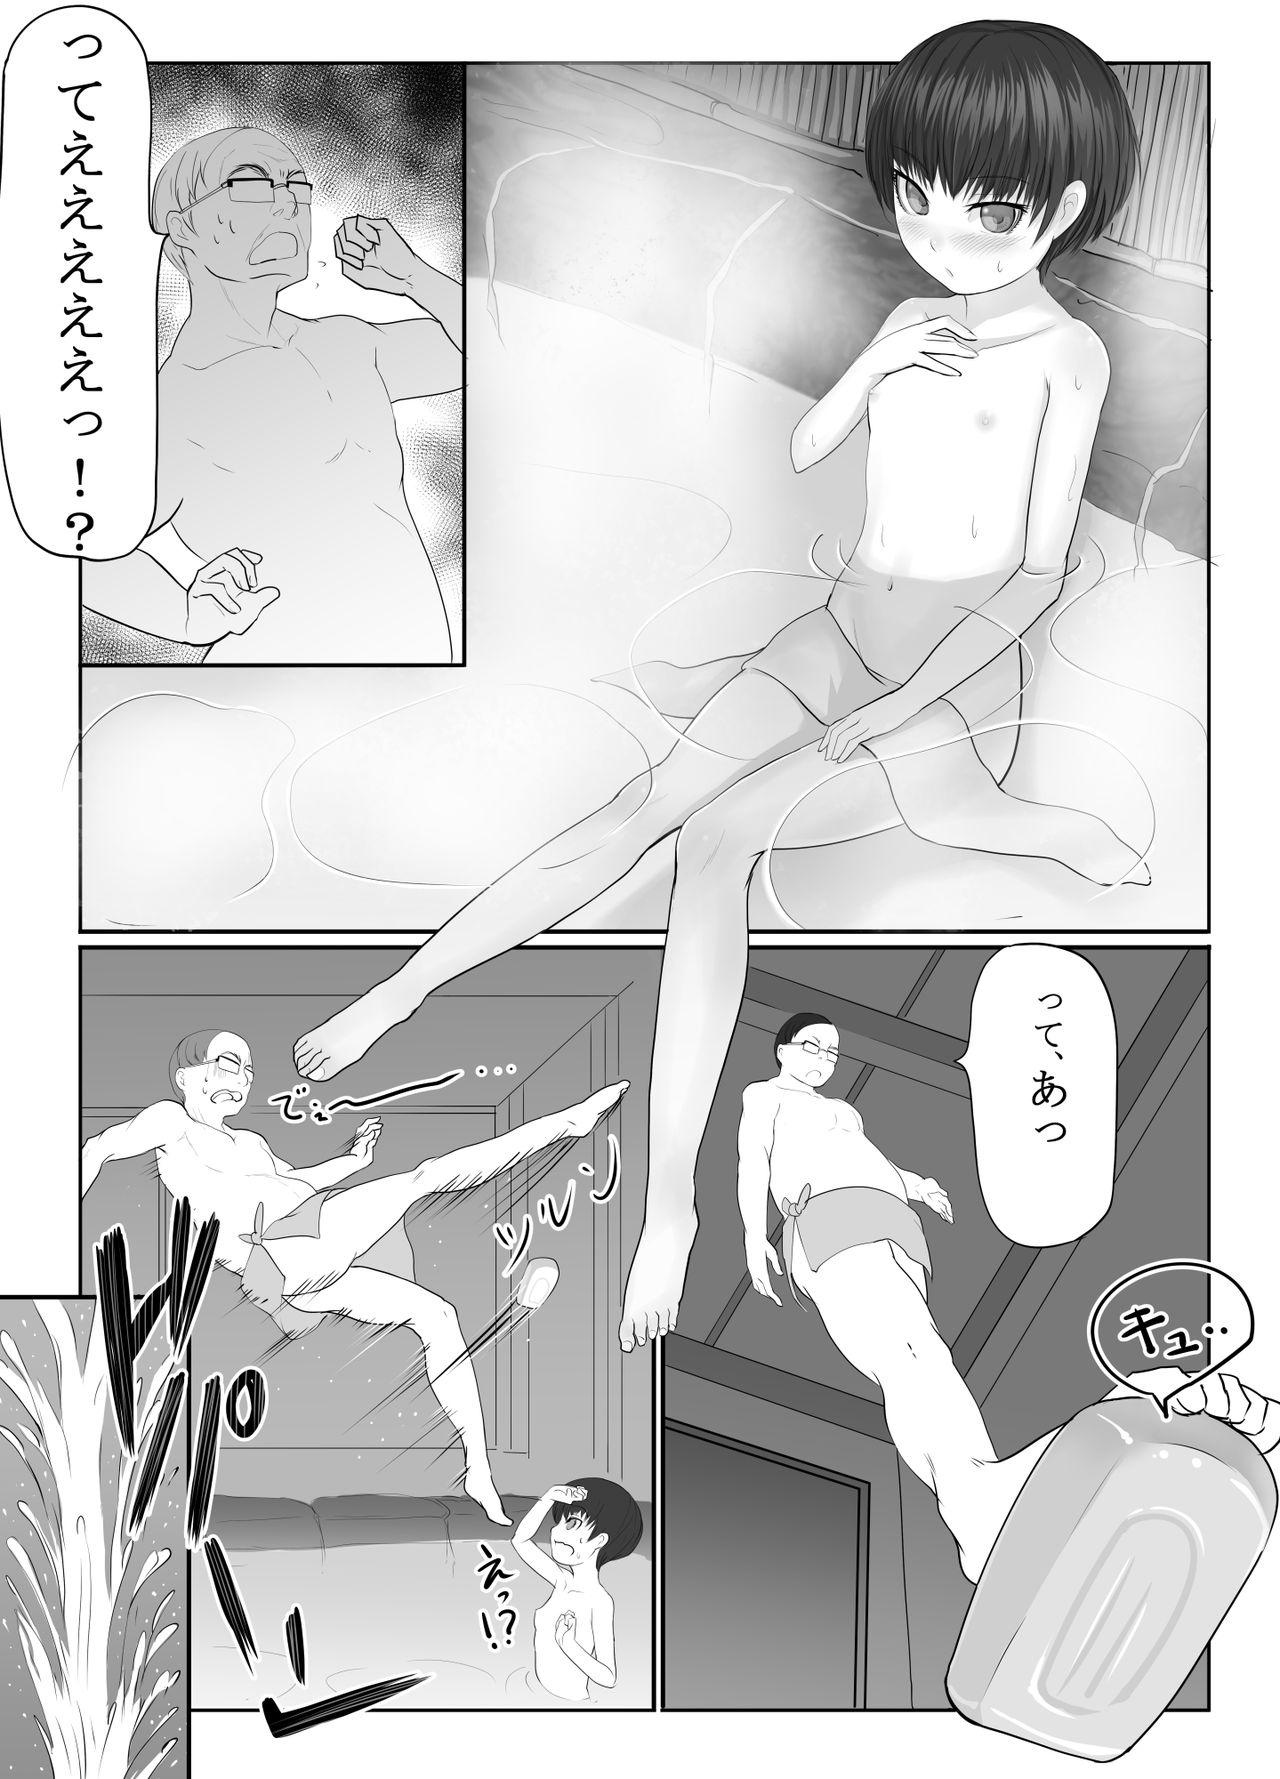 Spreading Shōjo izumi - Original Sixtynine - Page 6